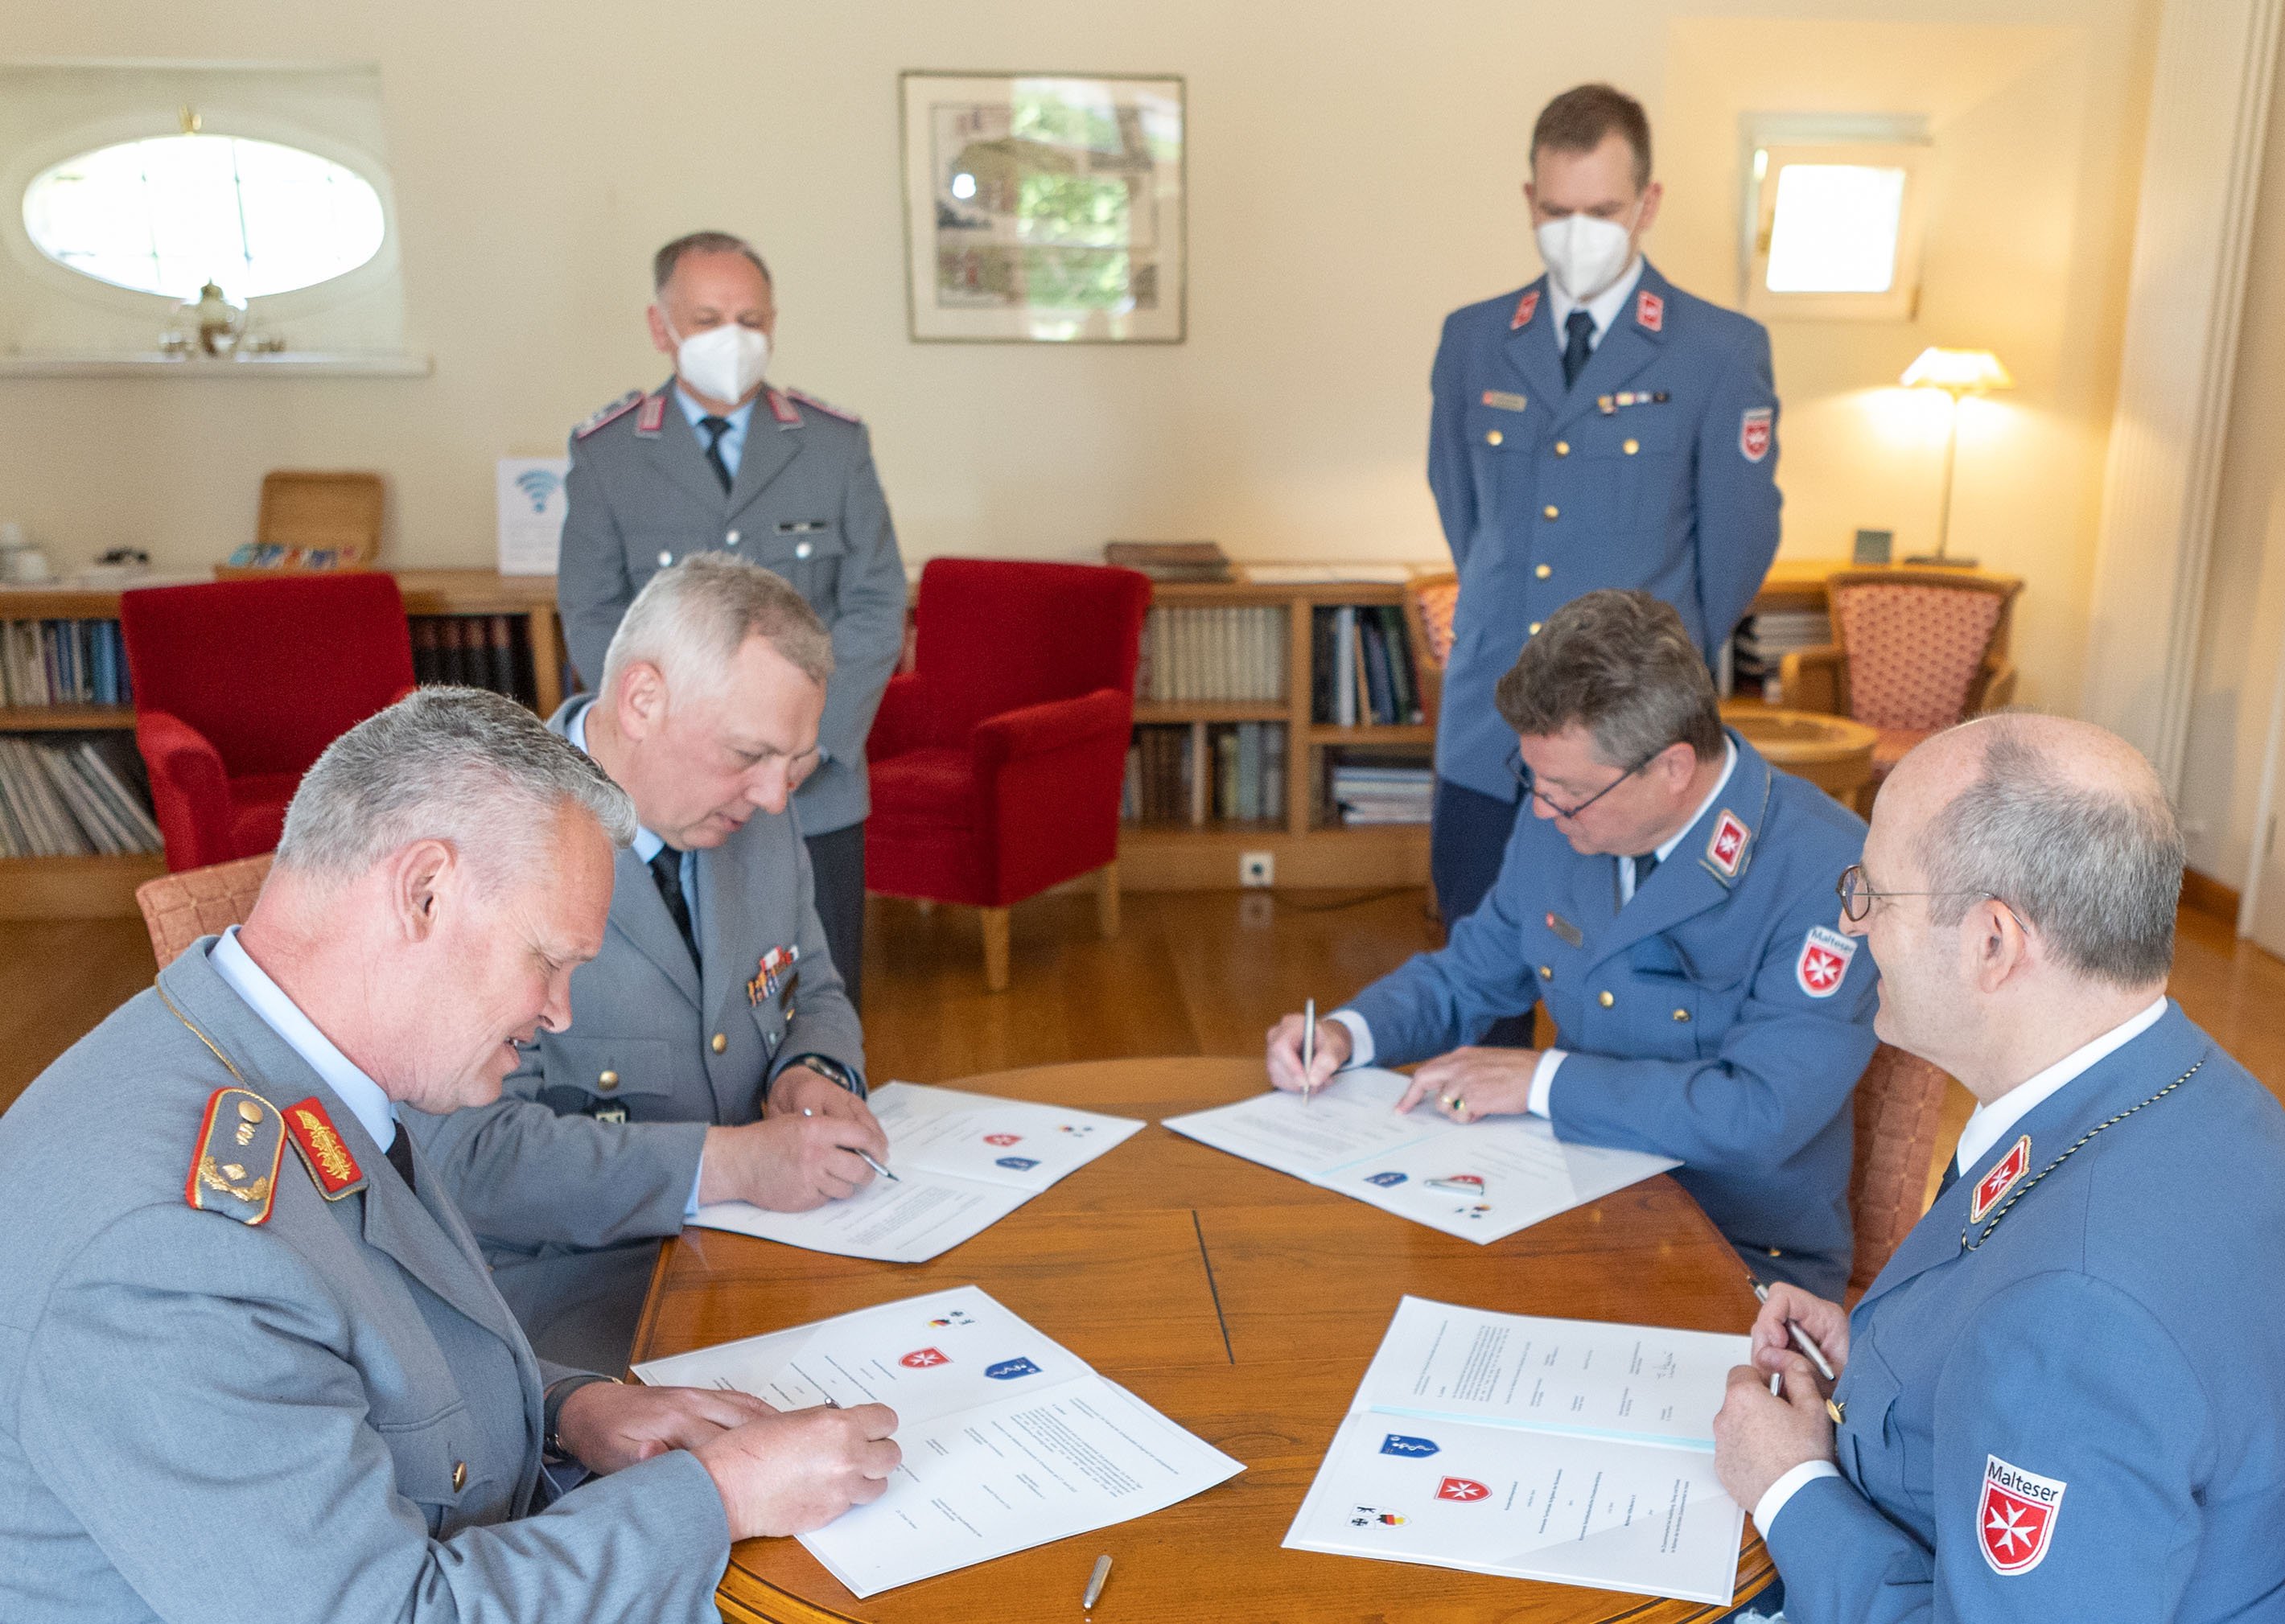 Malteser Hilfsdienst und Bundeswehr vereinbaren einge Zusammenarbeit / Thomas E. Wunsch / Malteser